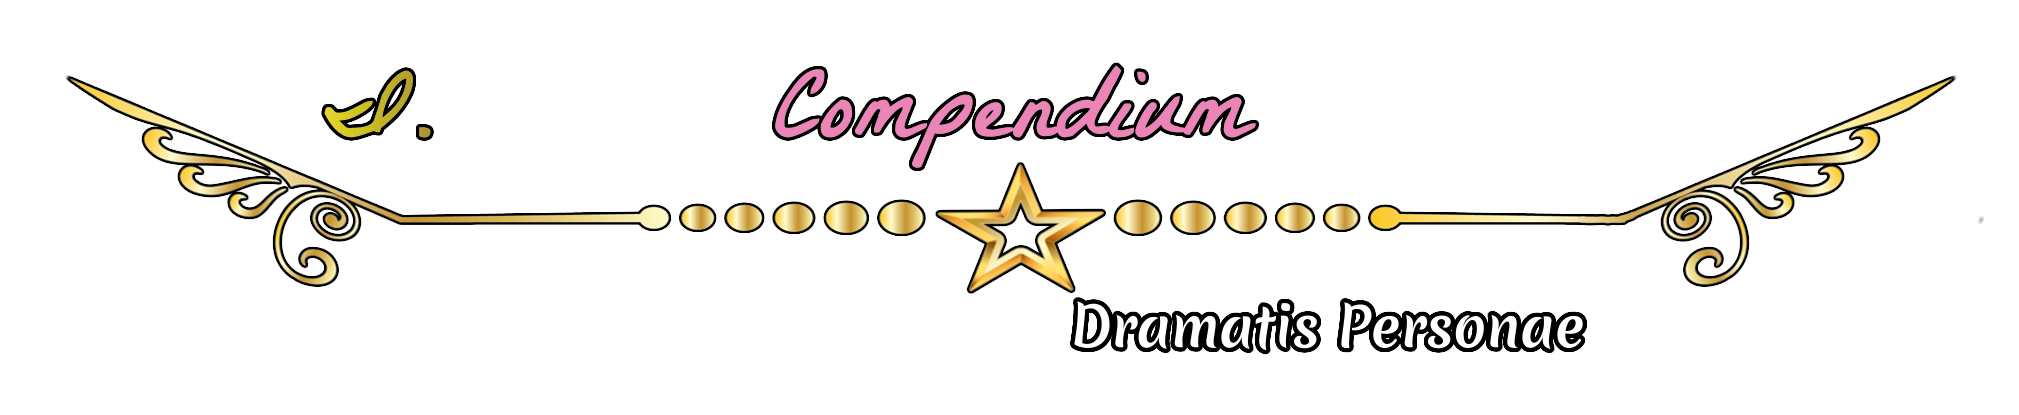 Arc 1 - Compendium - Dramatis Personae